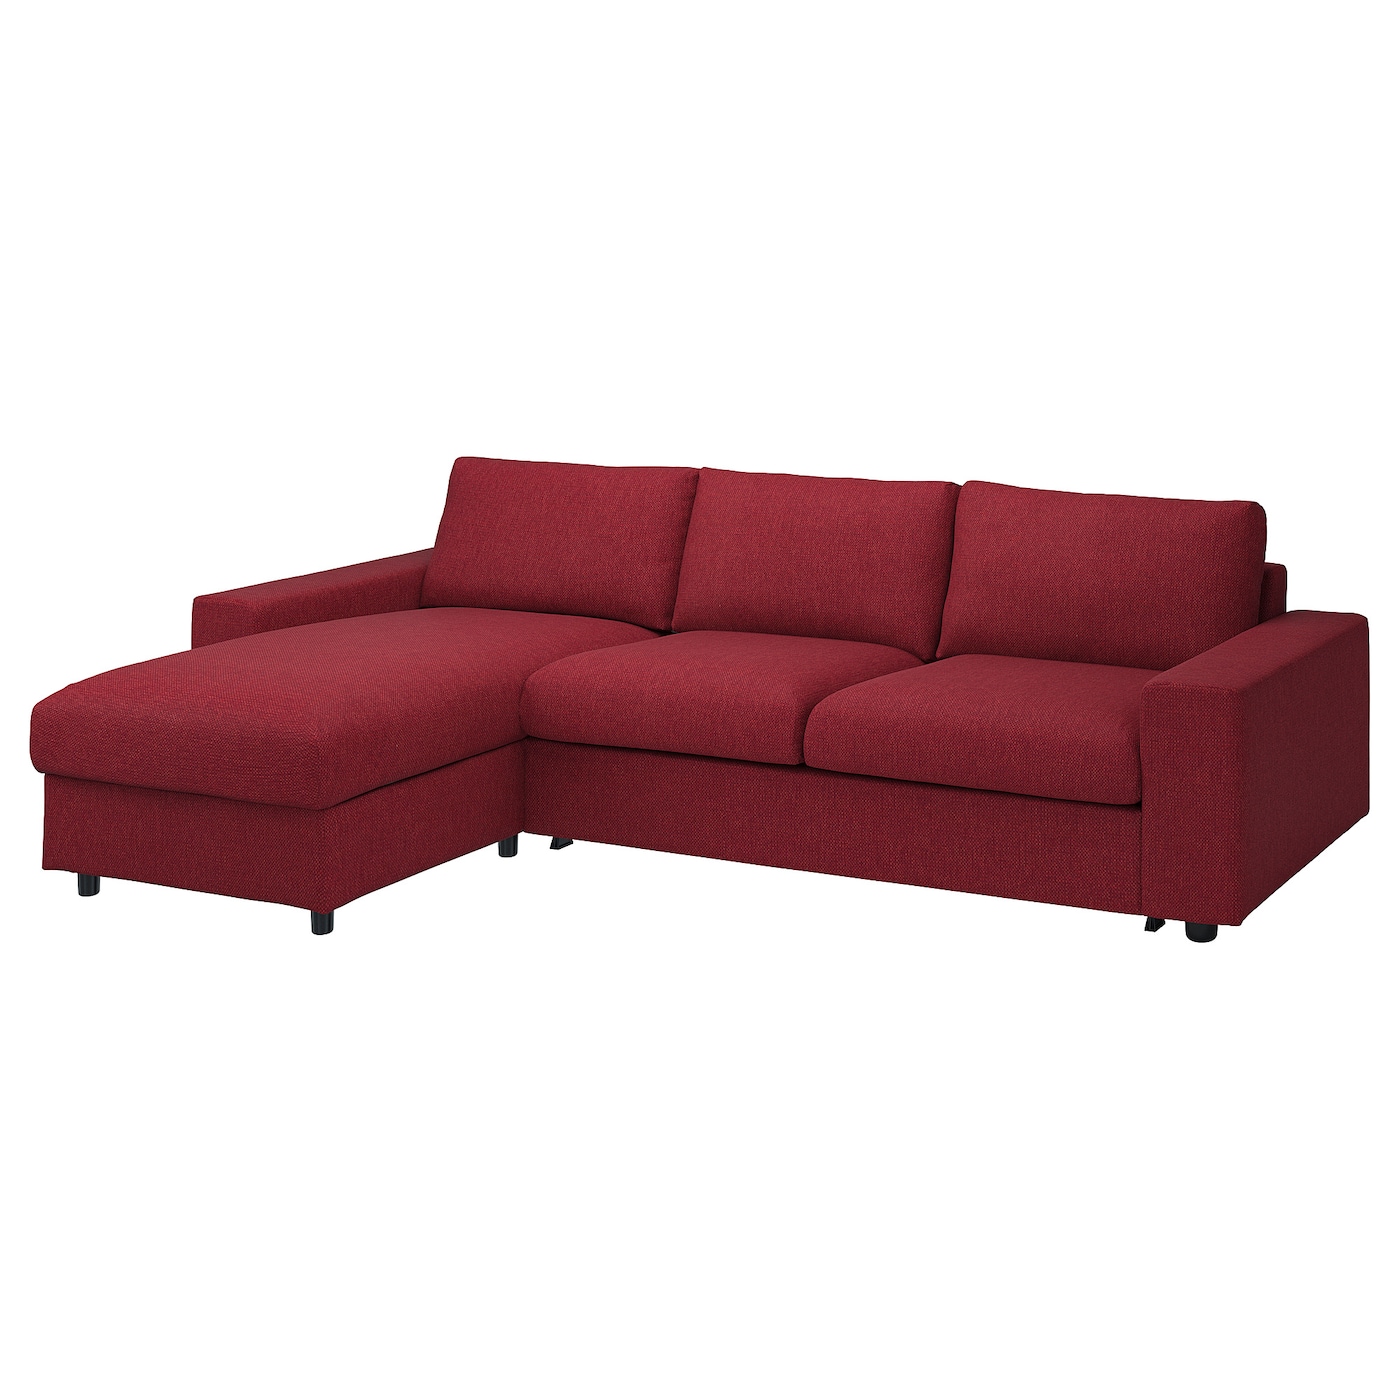 VIMLE Чехол на 3-местный диван с шезлонгом ИКЕА